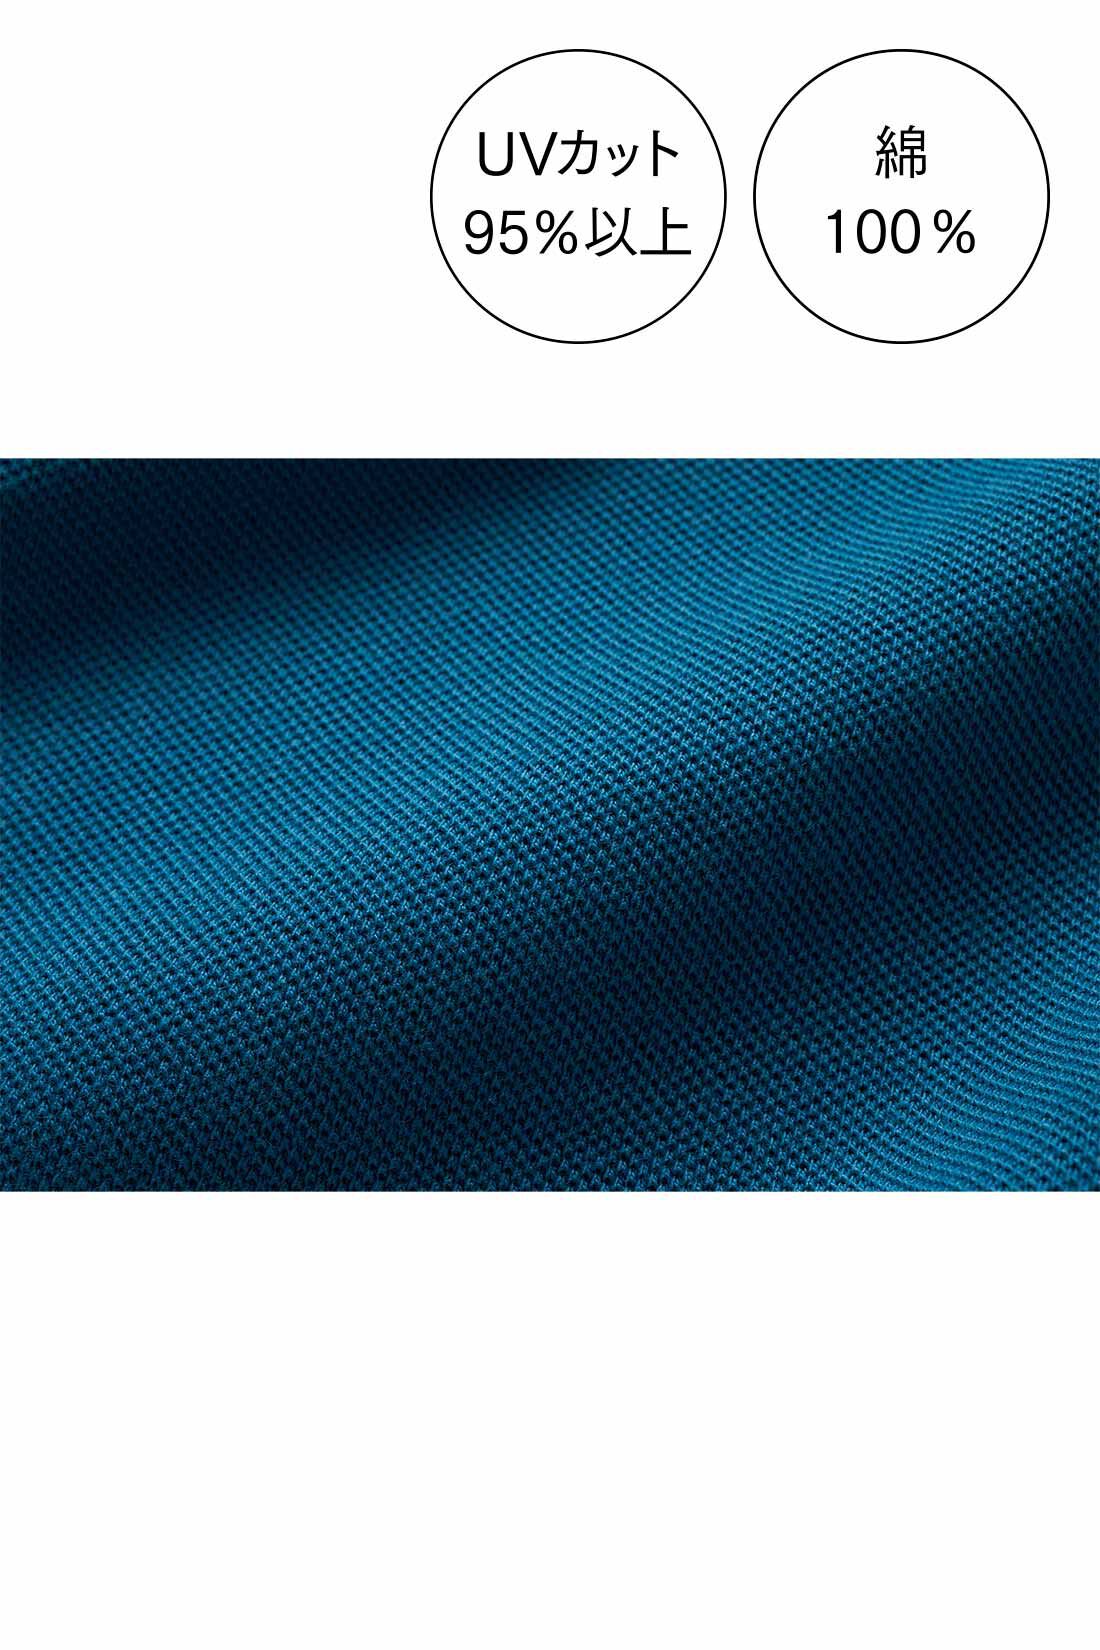 シロップ．|シロップ. デイリーにお役立ち コットン100％のかのこポロシャツの会|ほどよい厚みで軽やかなかのこ素材はUVカット機能付き。